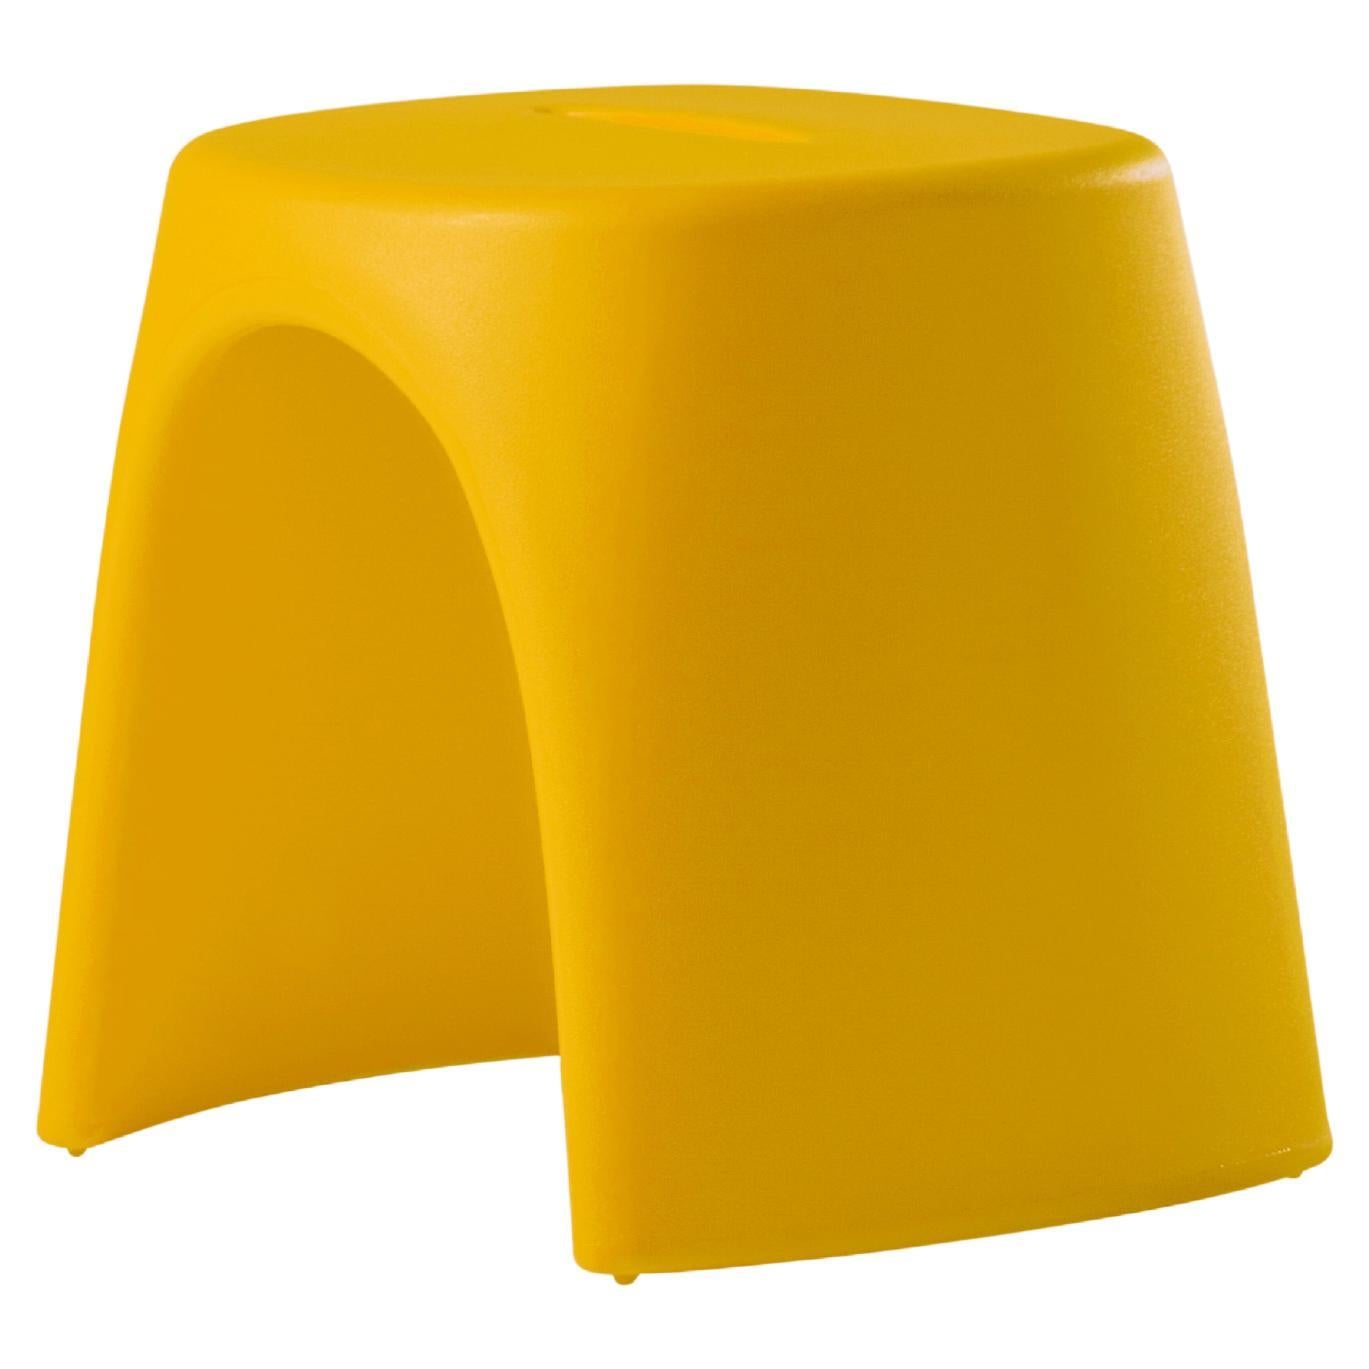 Slide Design Amélie Sgabello Stool in Saffron Yellow by Italo Pertichini